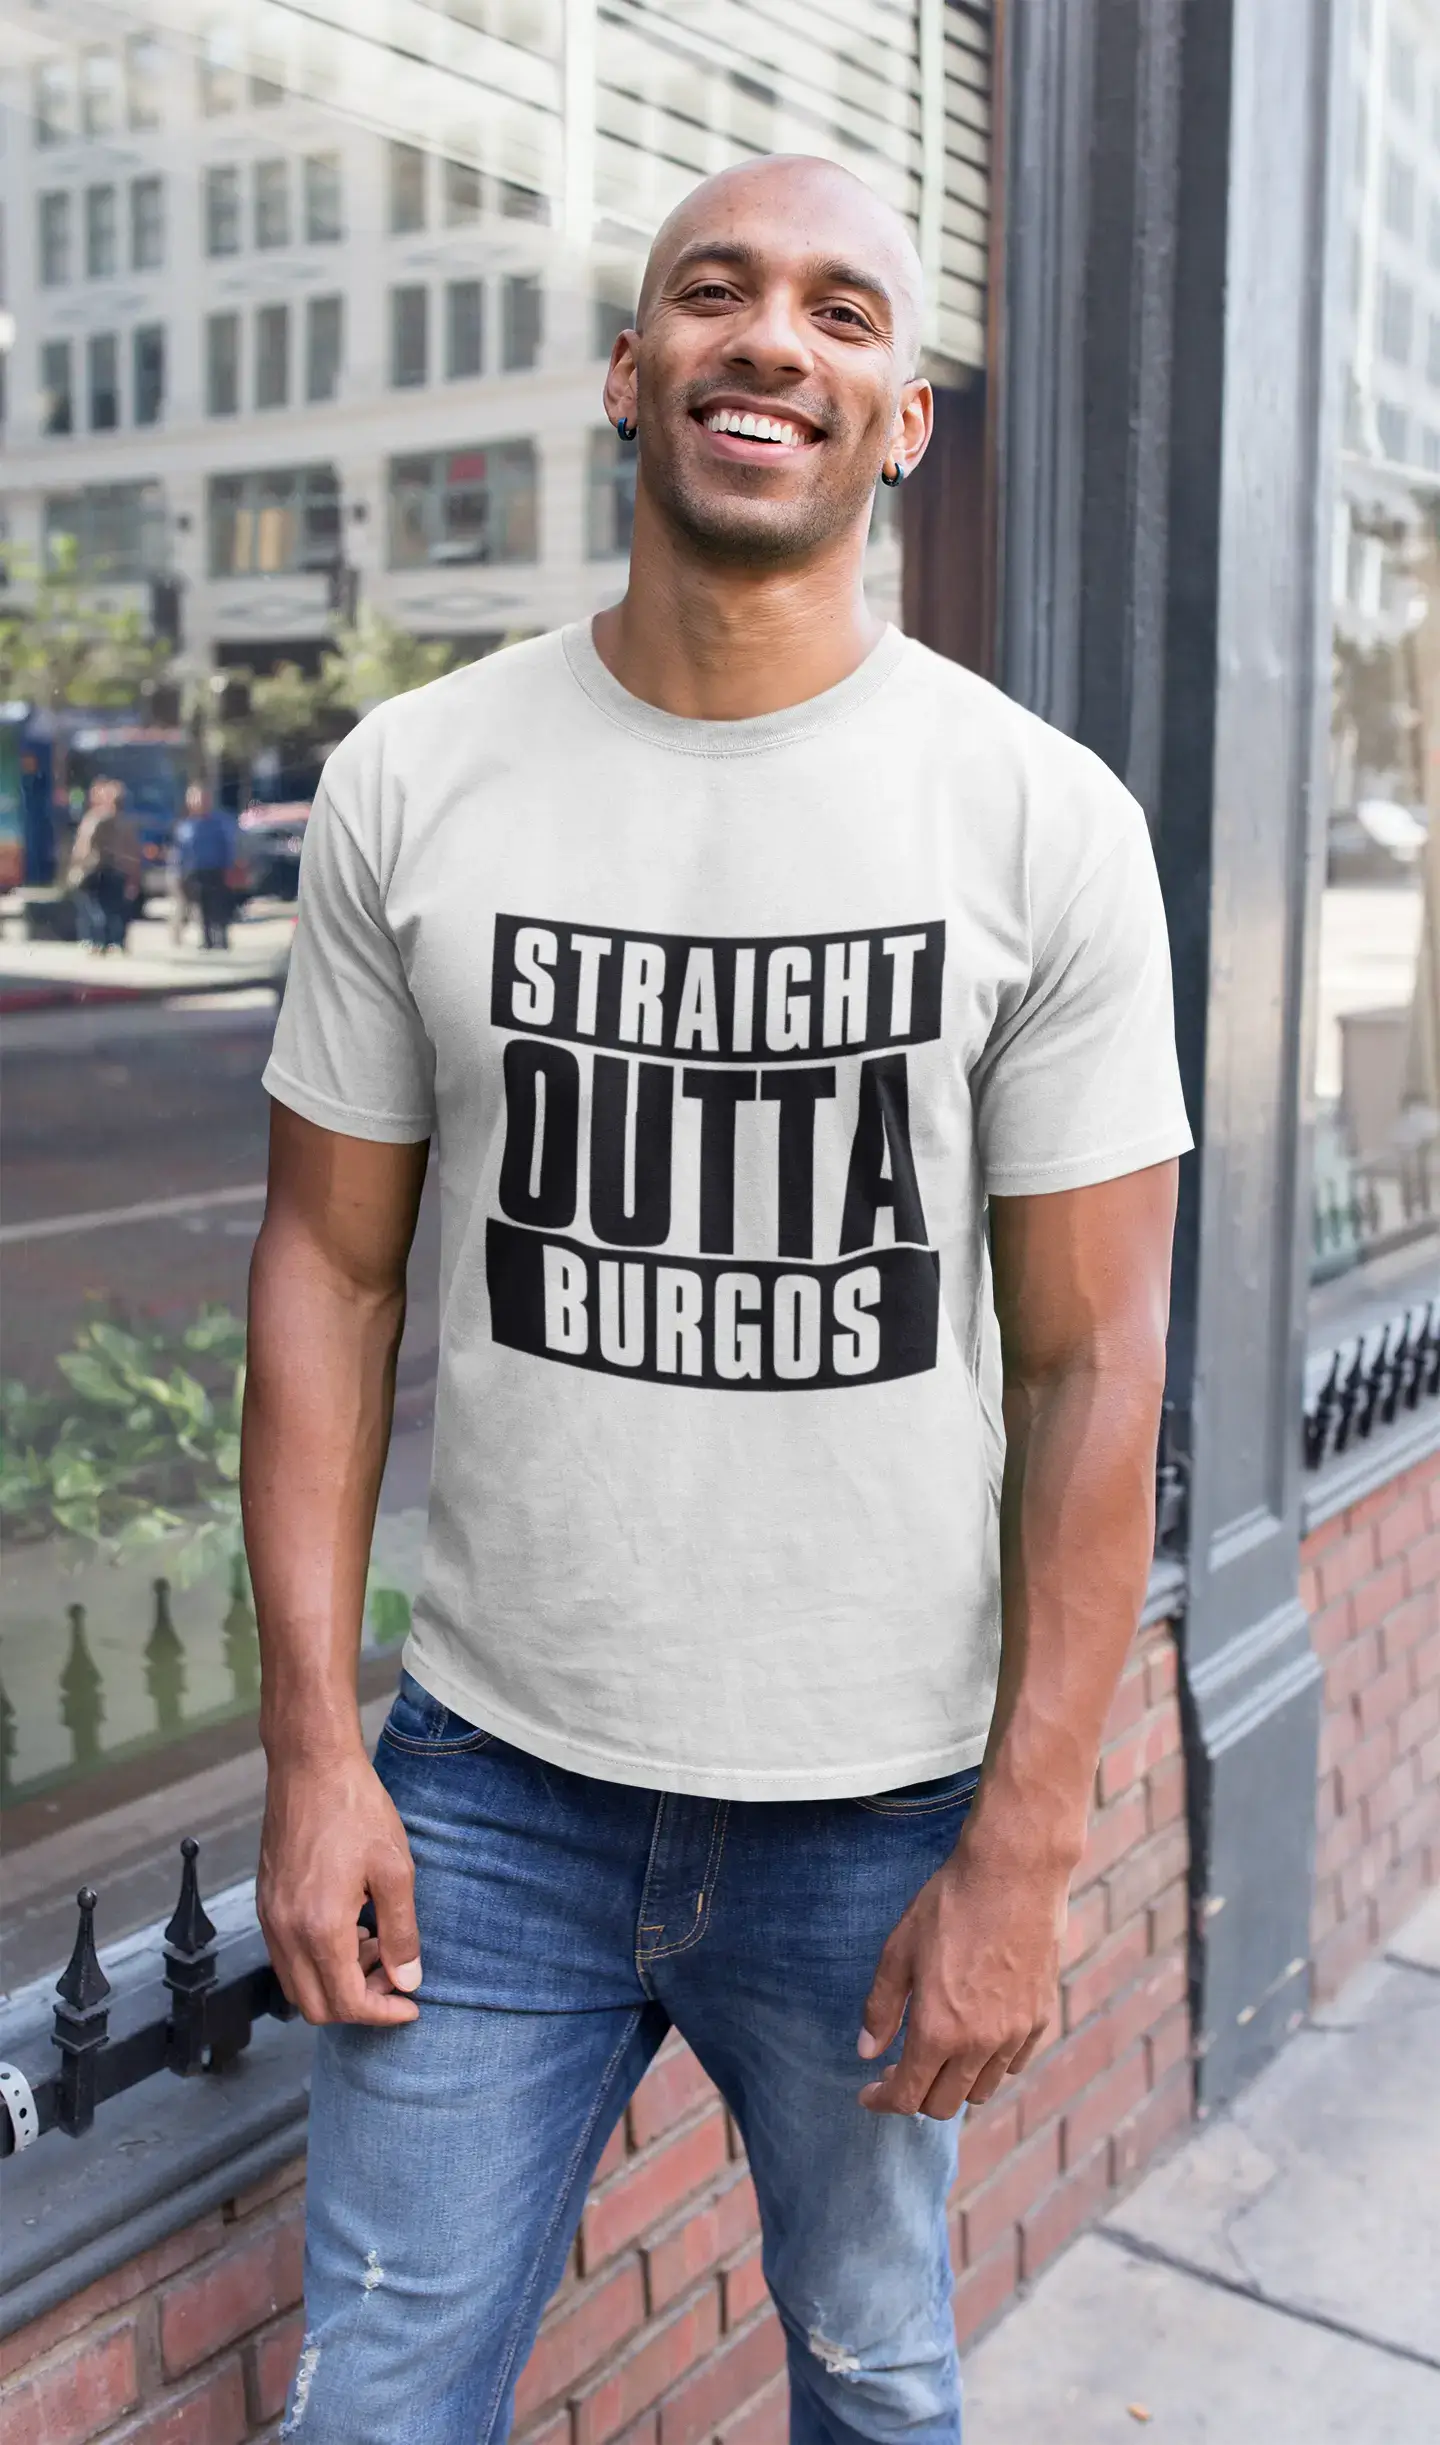 Straight Outta Burgos, Men's Short Sleeve Round Neck T-shirt 00027